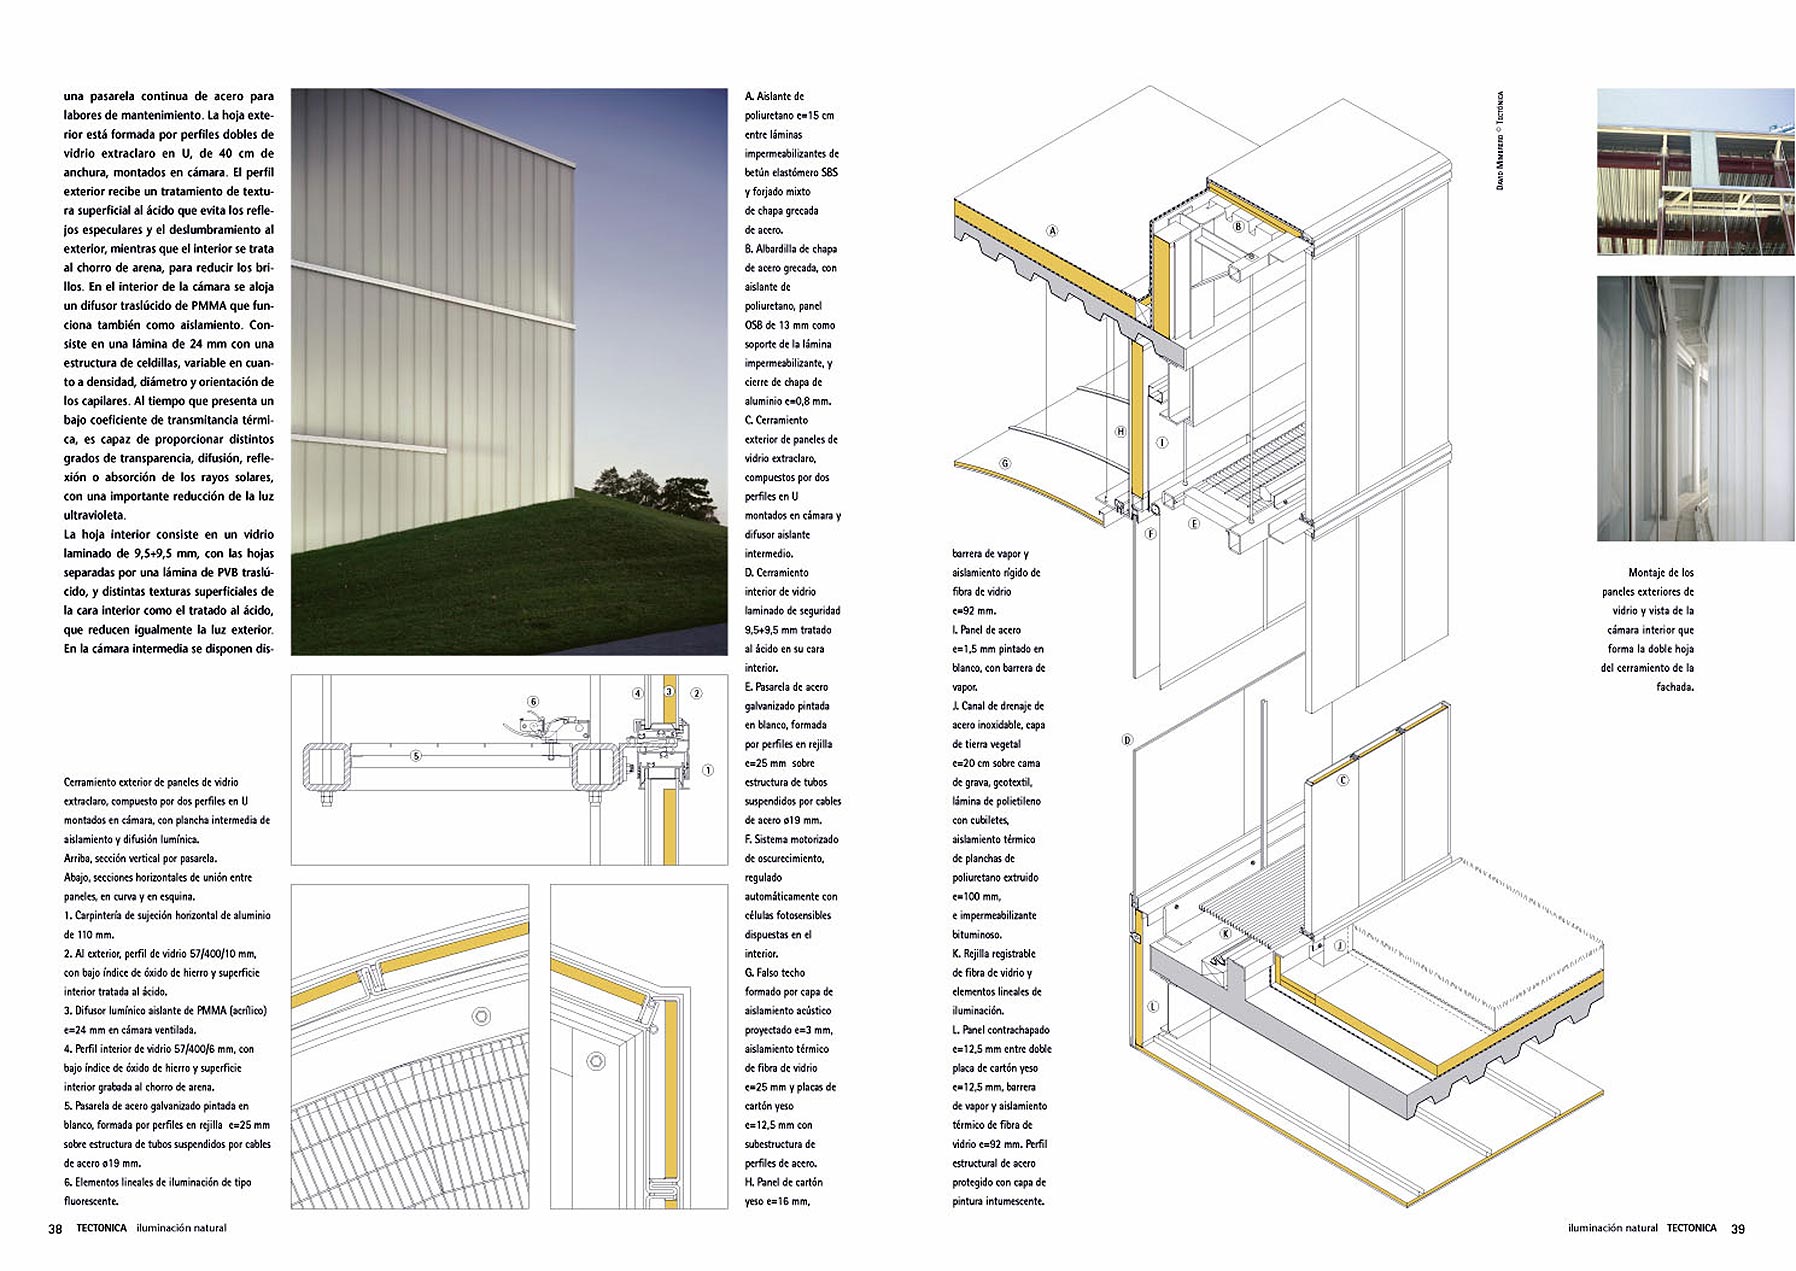 Doble página correspondiente al proyecto de Steven Holl Architects para la ampliacin del Museo Nelson-Atkins. Detalle.